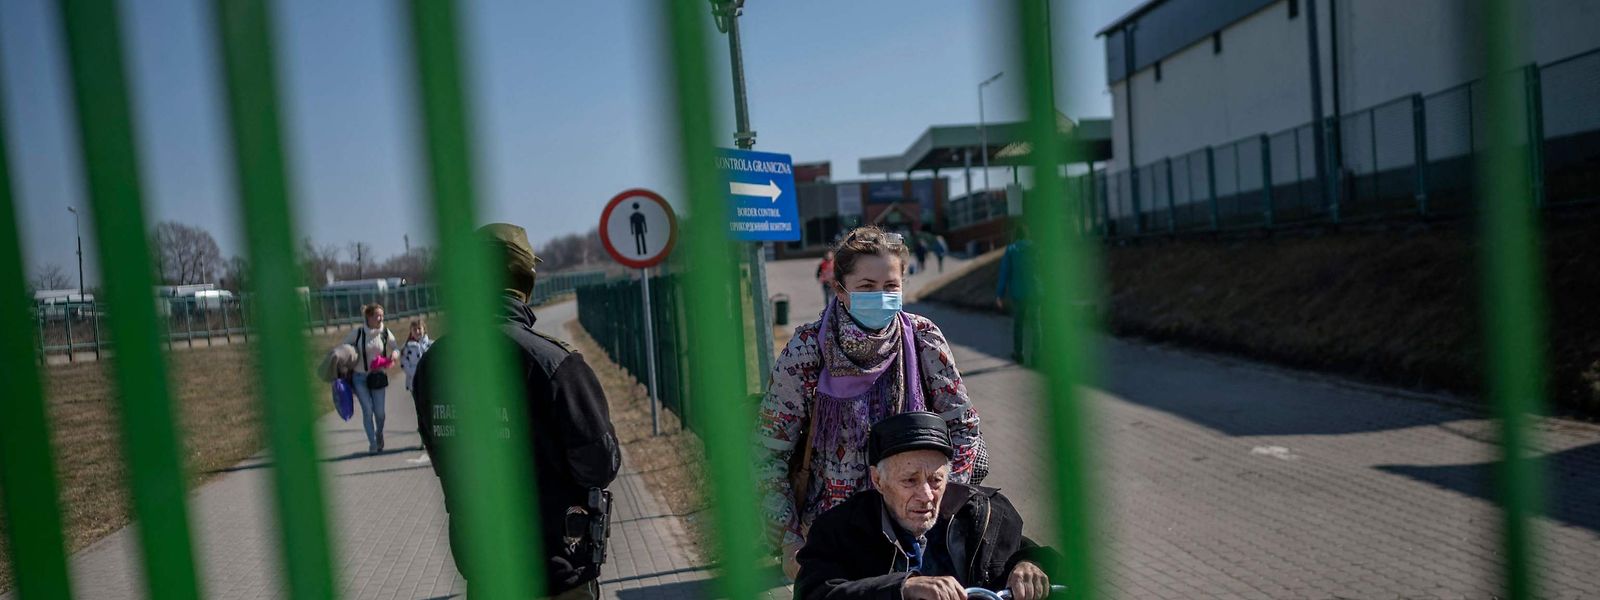 A maioria dos refugiados ucranianos, como os destas imagem, tem fugido da guerra através da fronteira com a Polónia.